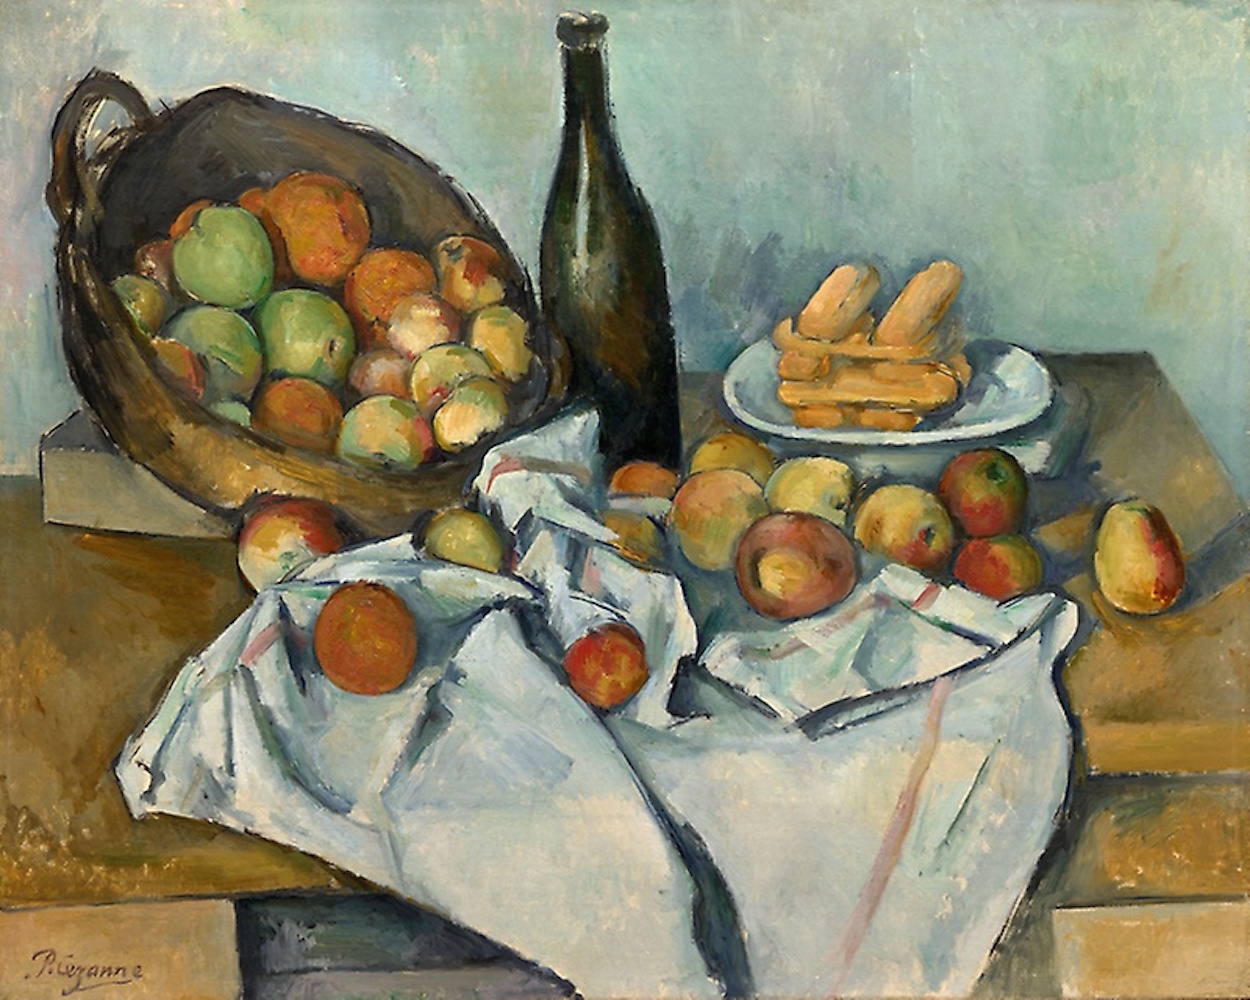 リンゴの籠 by Paul Cézanne - 1893年頃 - 65 x 80 cm 